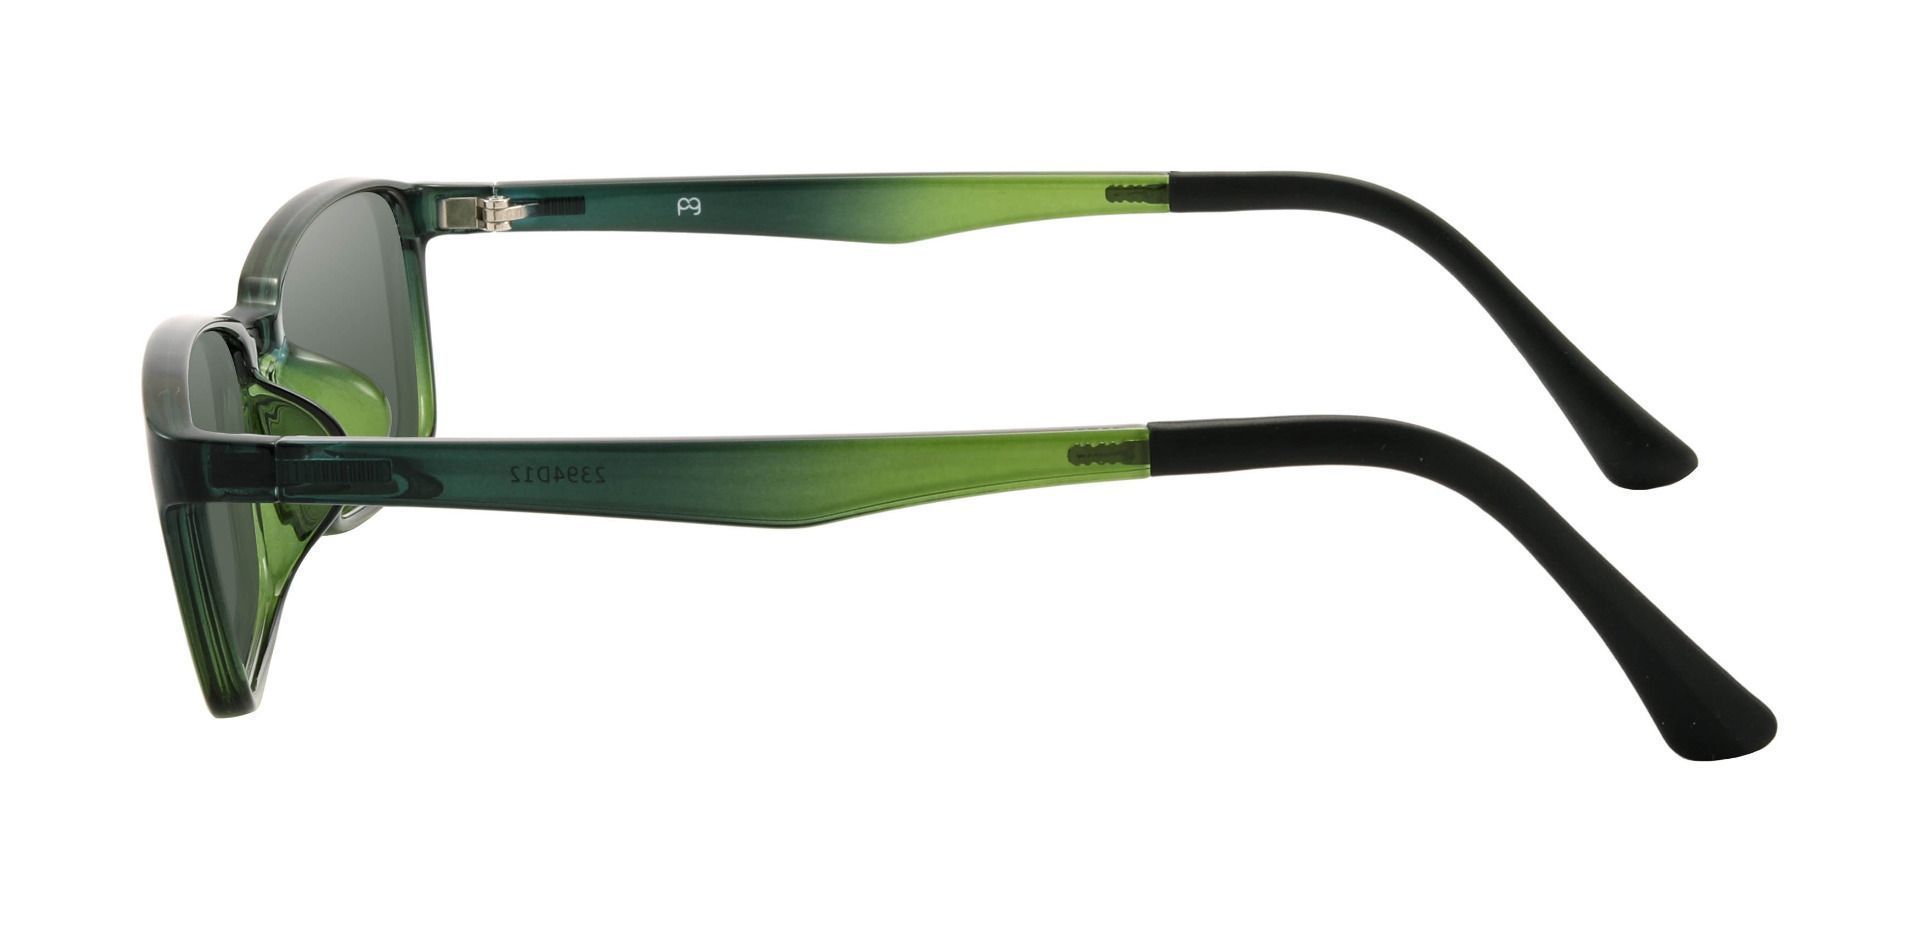 San Dimas Rectangle Prescription Sunglasses - Green Frame With Green Lenses